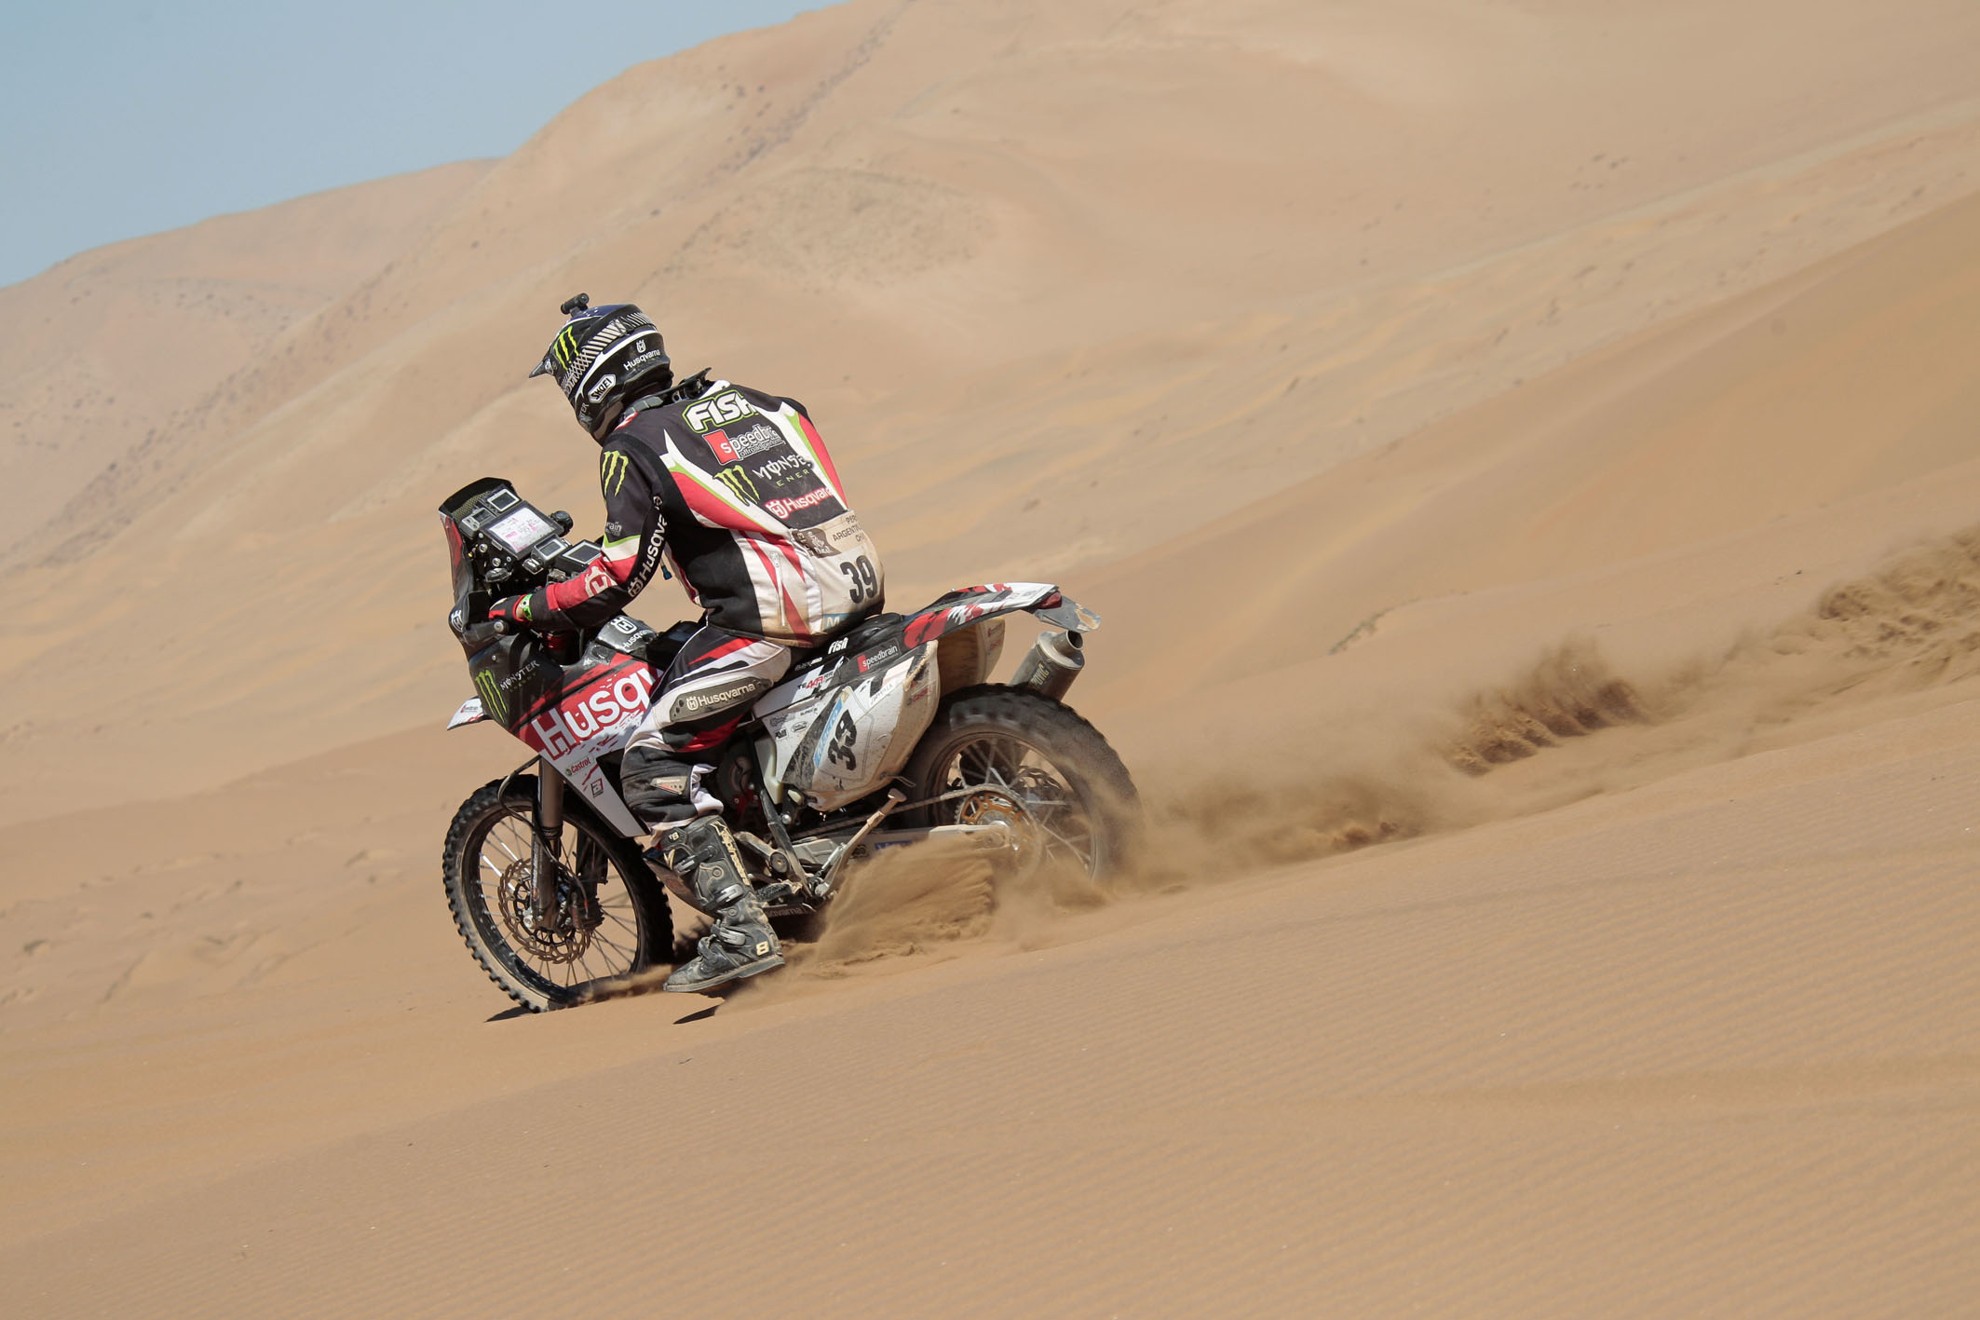 Dakar 2013 – Husqvarna Dakar Rally Results